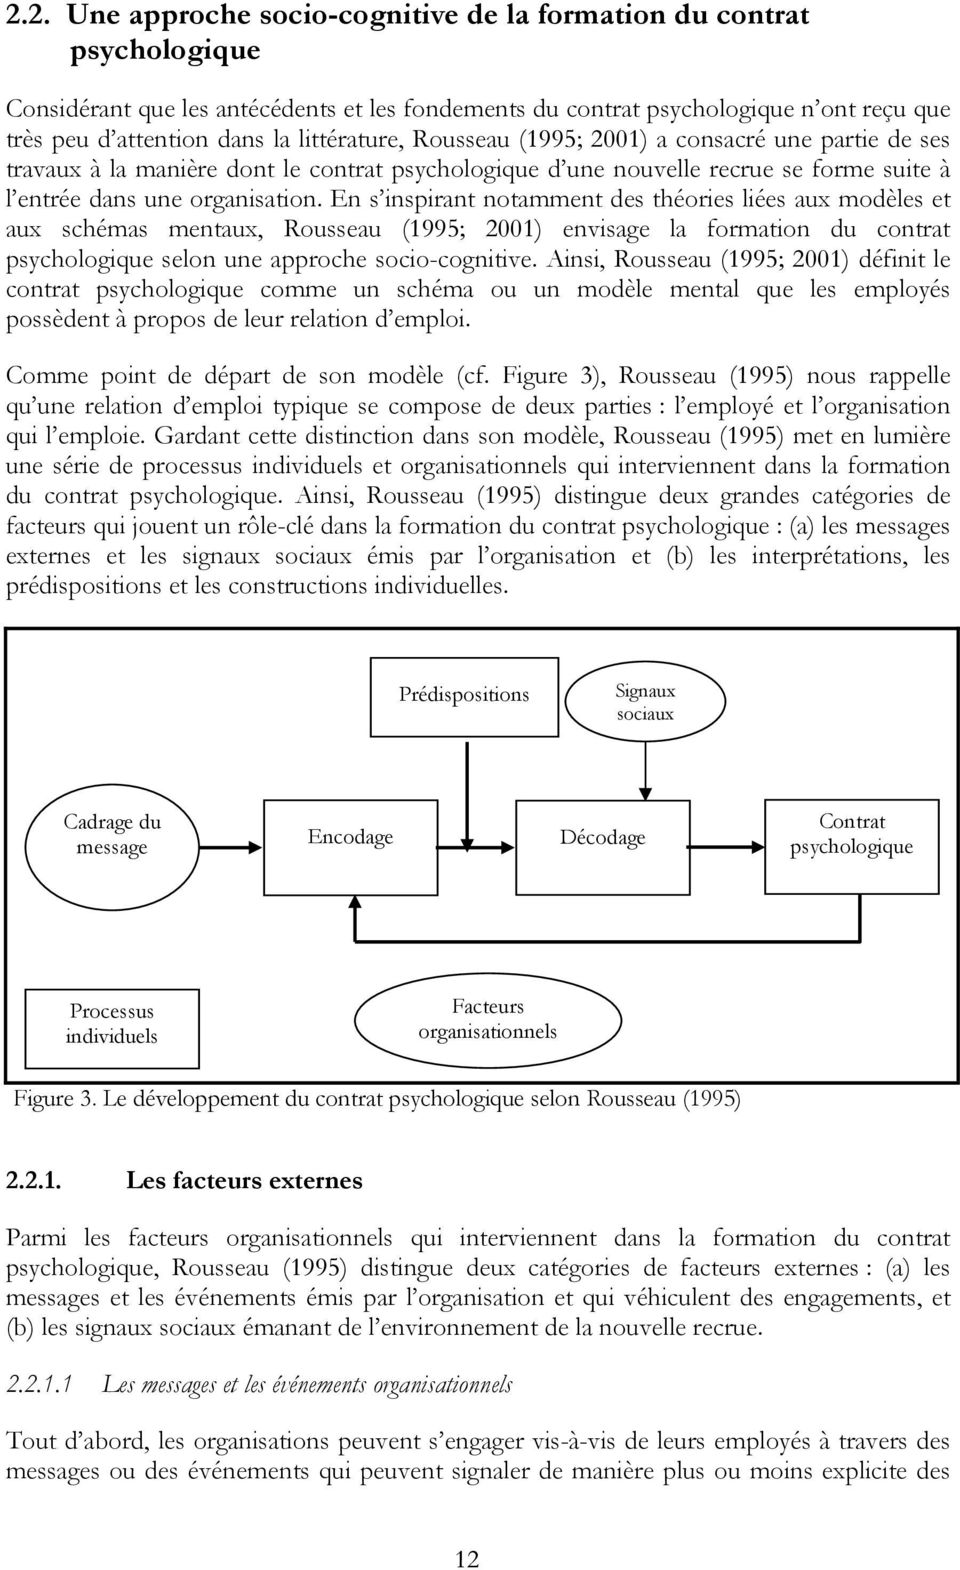 En s inspirant notamment des théories liées aux modèles et aux schémas mentaux, Rousseau (1995; 2001) envisage la formation du contrat psychologique selon une approche socio-cognitive.